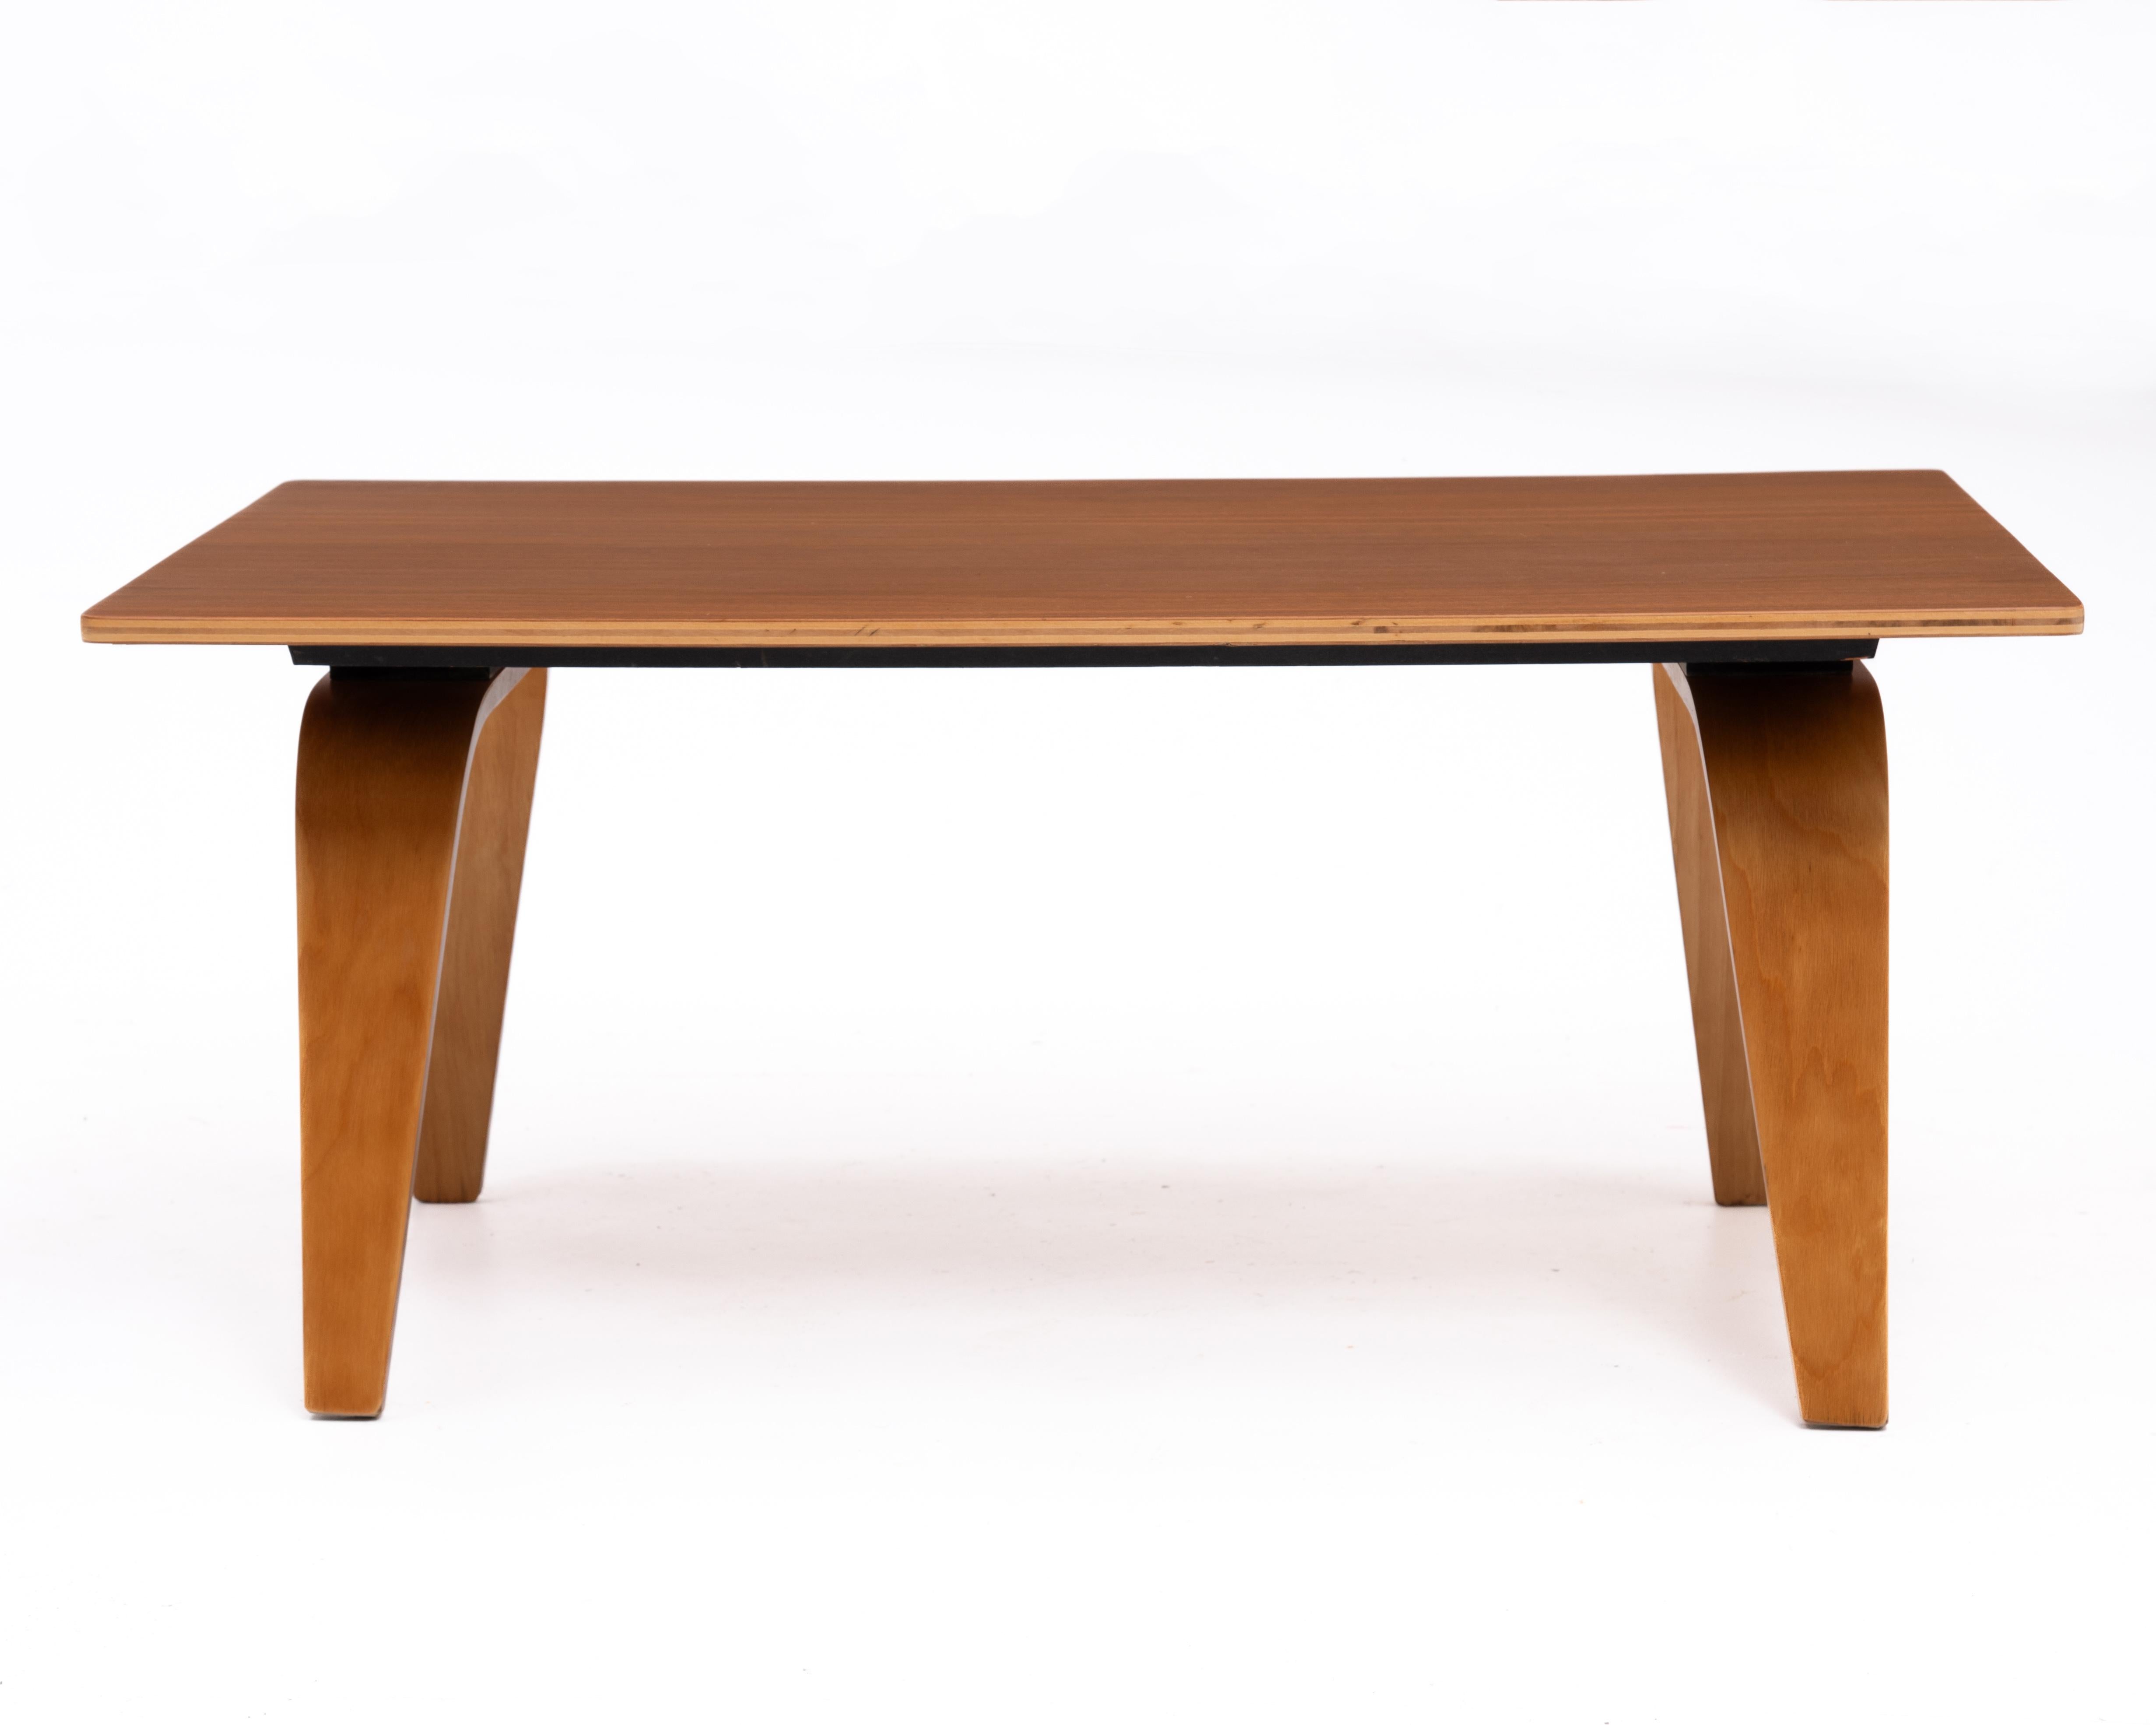 Ein seltener Couchtisch CTW1 von Charles und Ray Eames. Eine frühe Version des OTW (Oblong Table Wood) Couchtisches. Der CTW1 wurde in den 1940er Jahren eingeführt und zunächst von der Evans Plywood Company hergestellt. Die handschriftliche